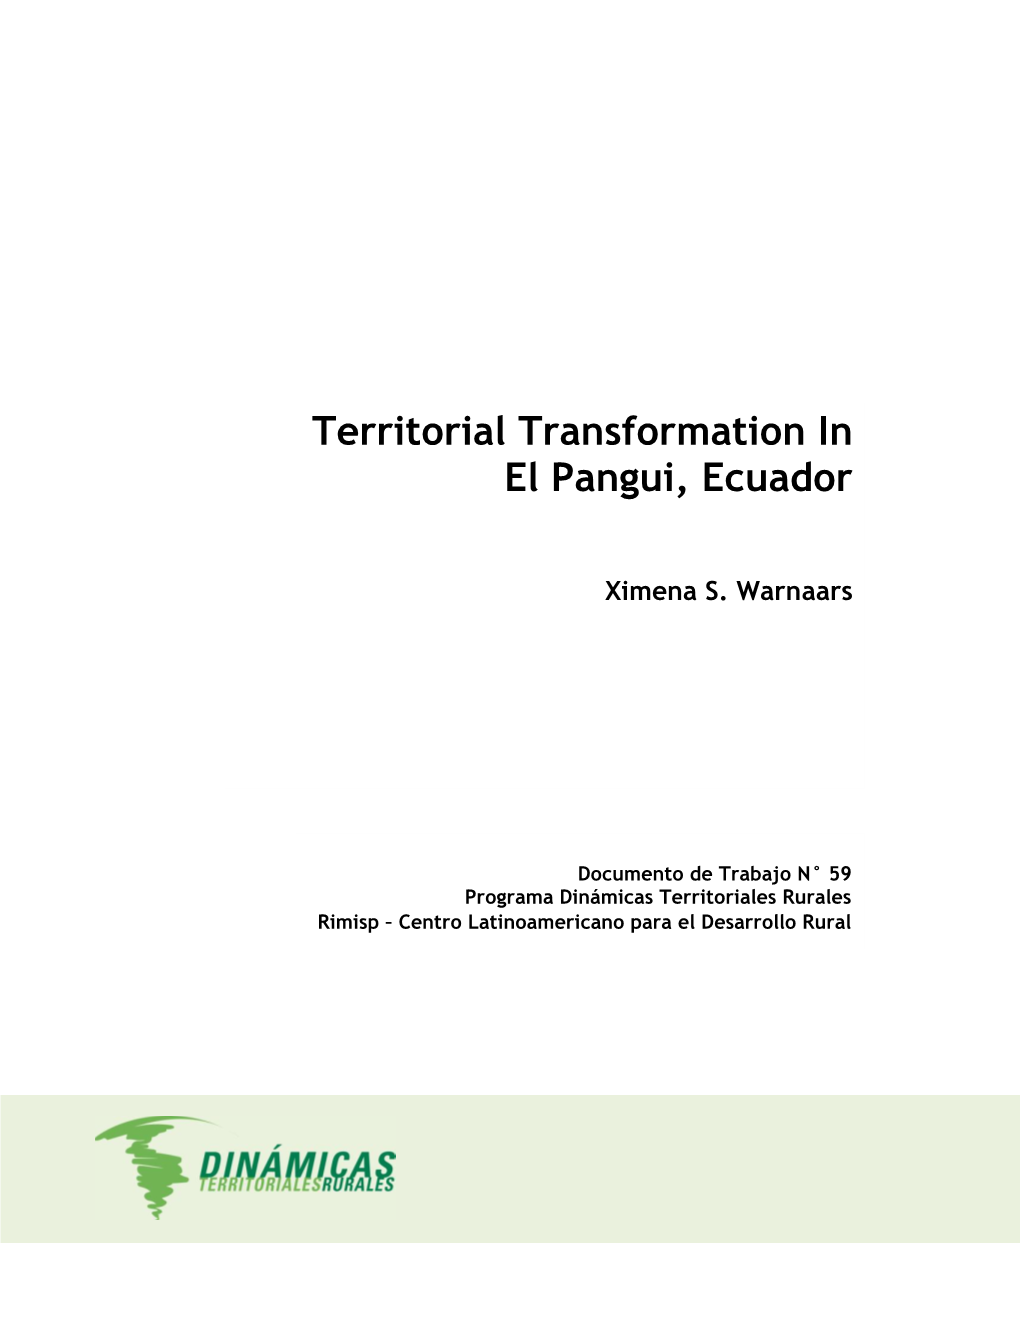 Territorial Transformation in El Pangui, Ecuador”